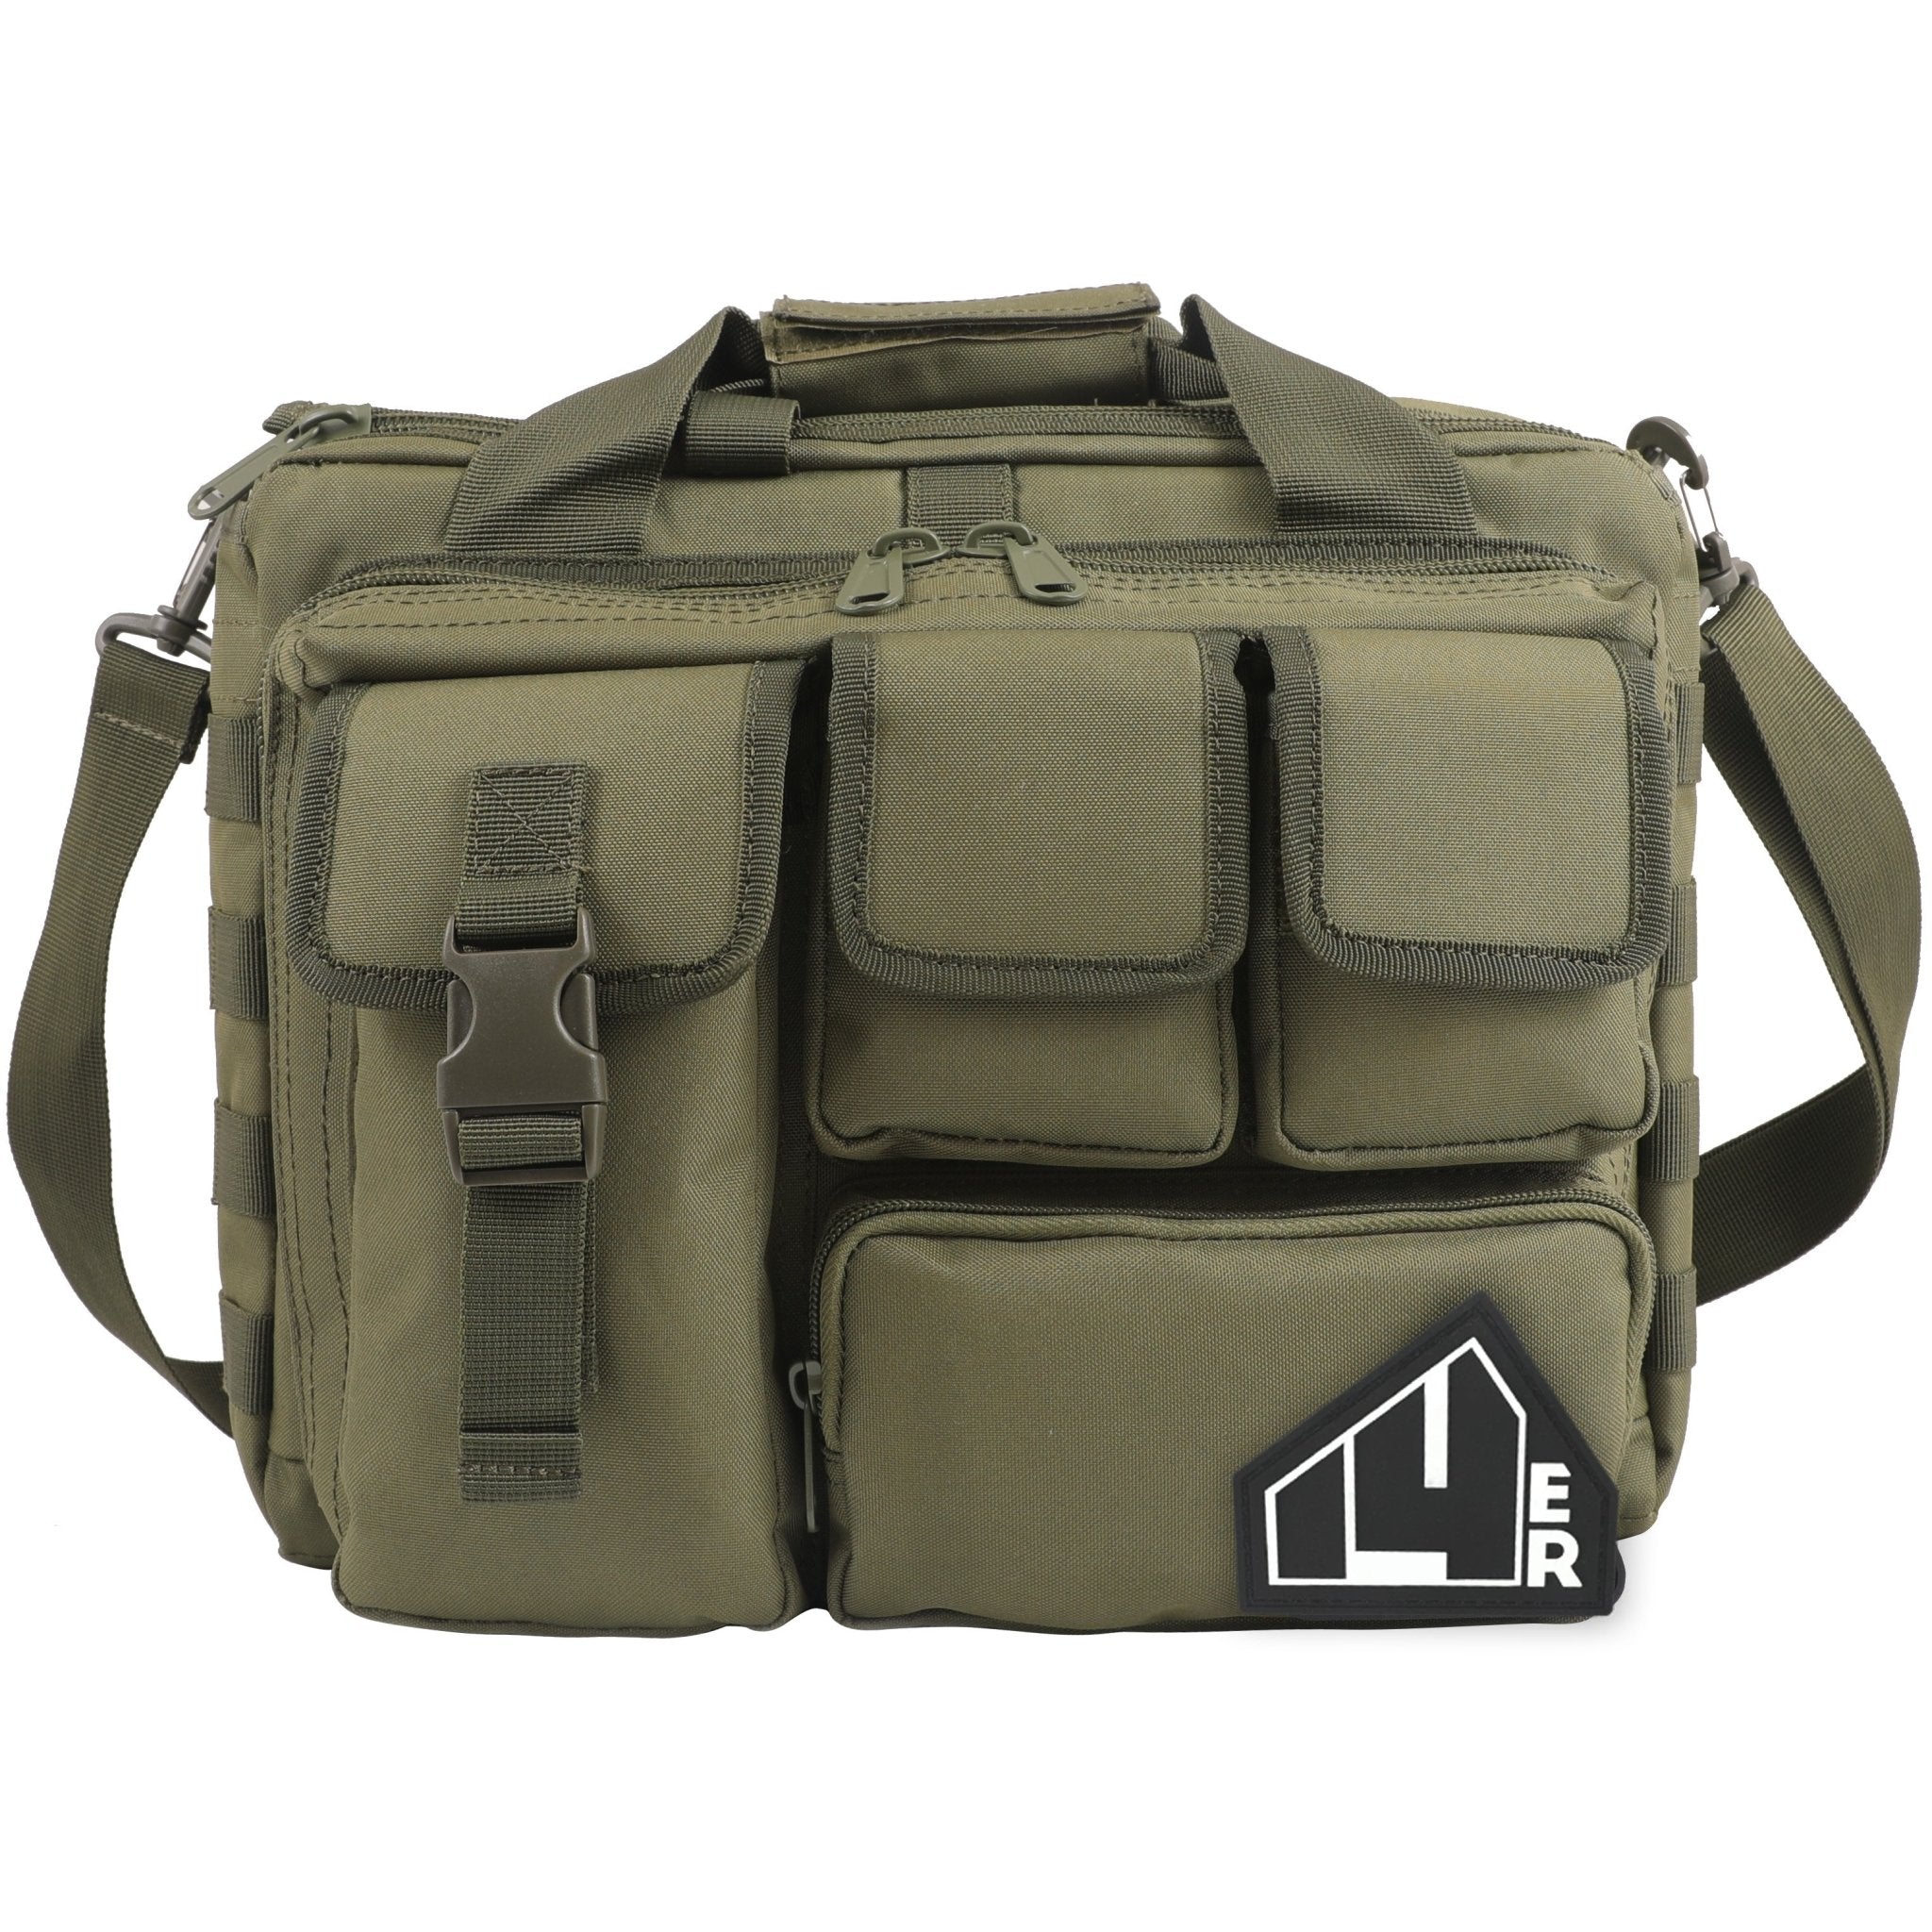 Gun Range Bag Essentials: How to Pack a Range Bag? – 14er Tactical